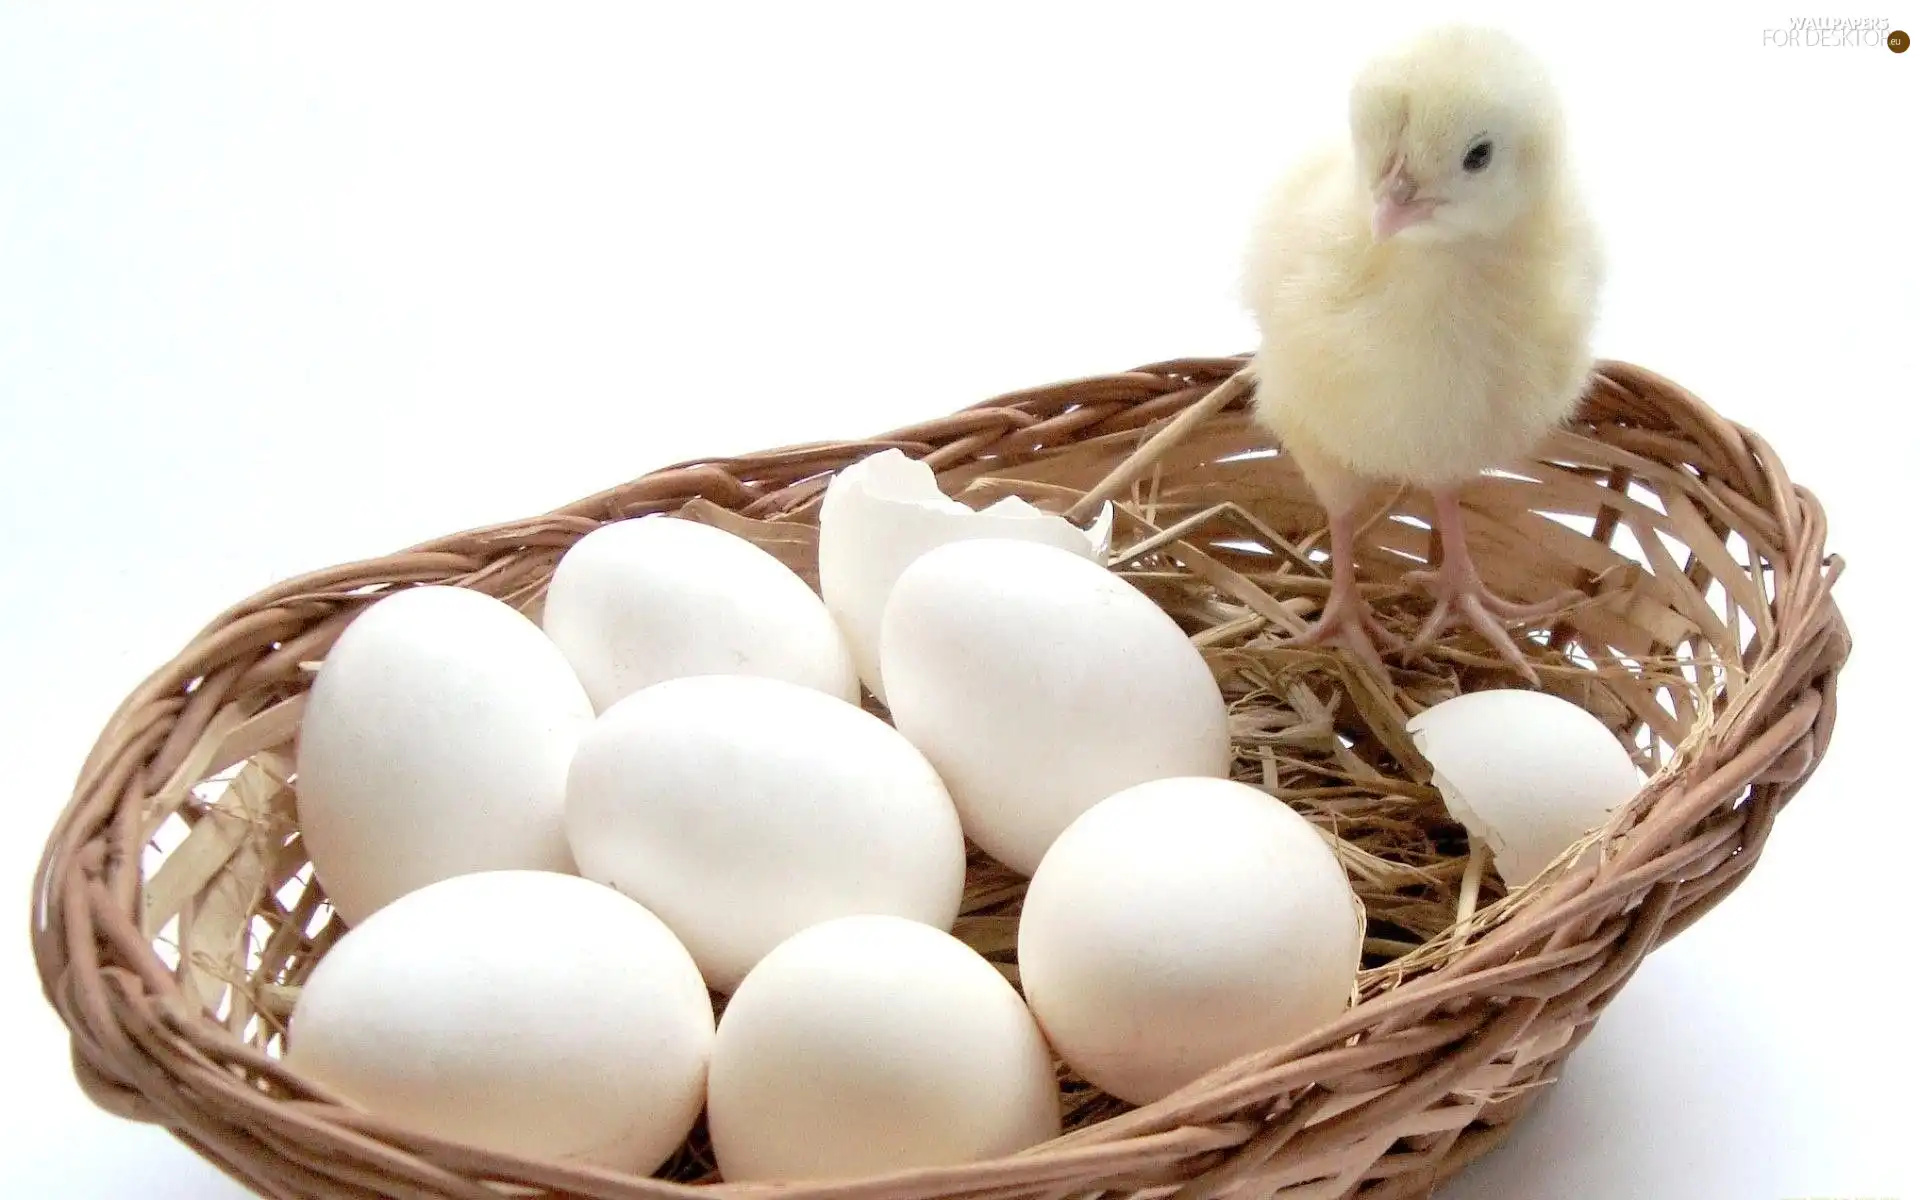 chicken, basket, eggs